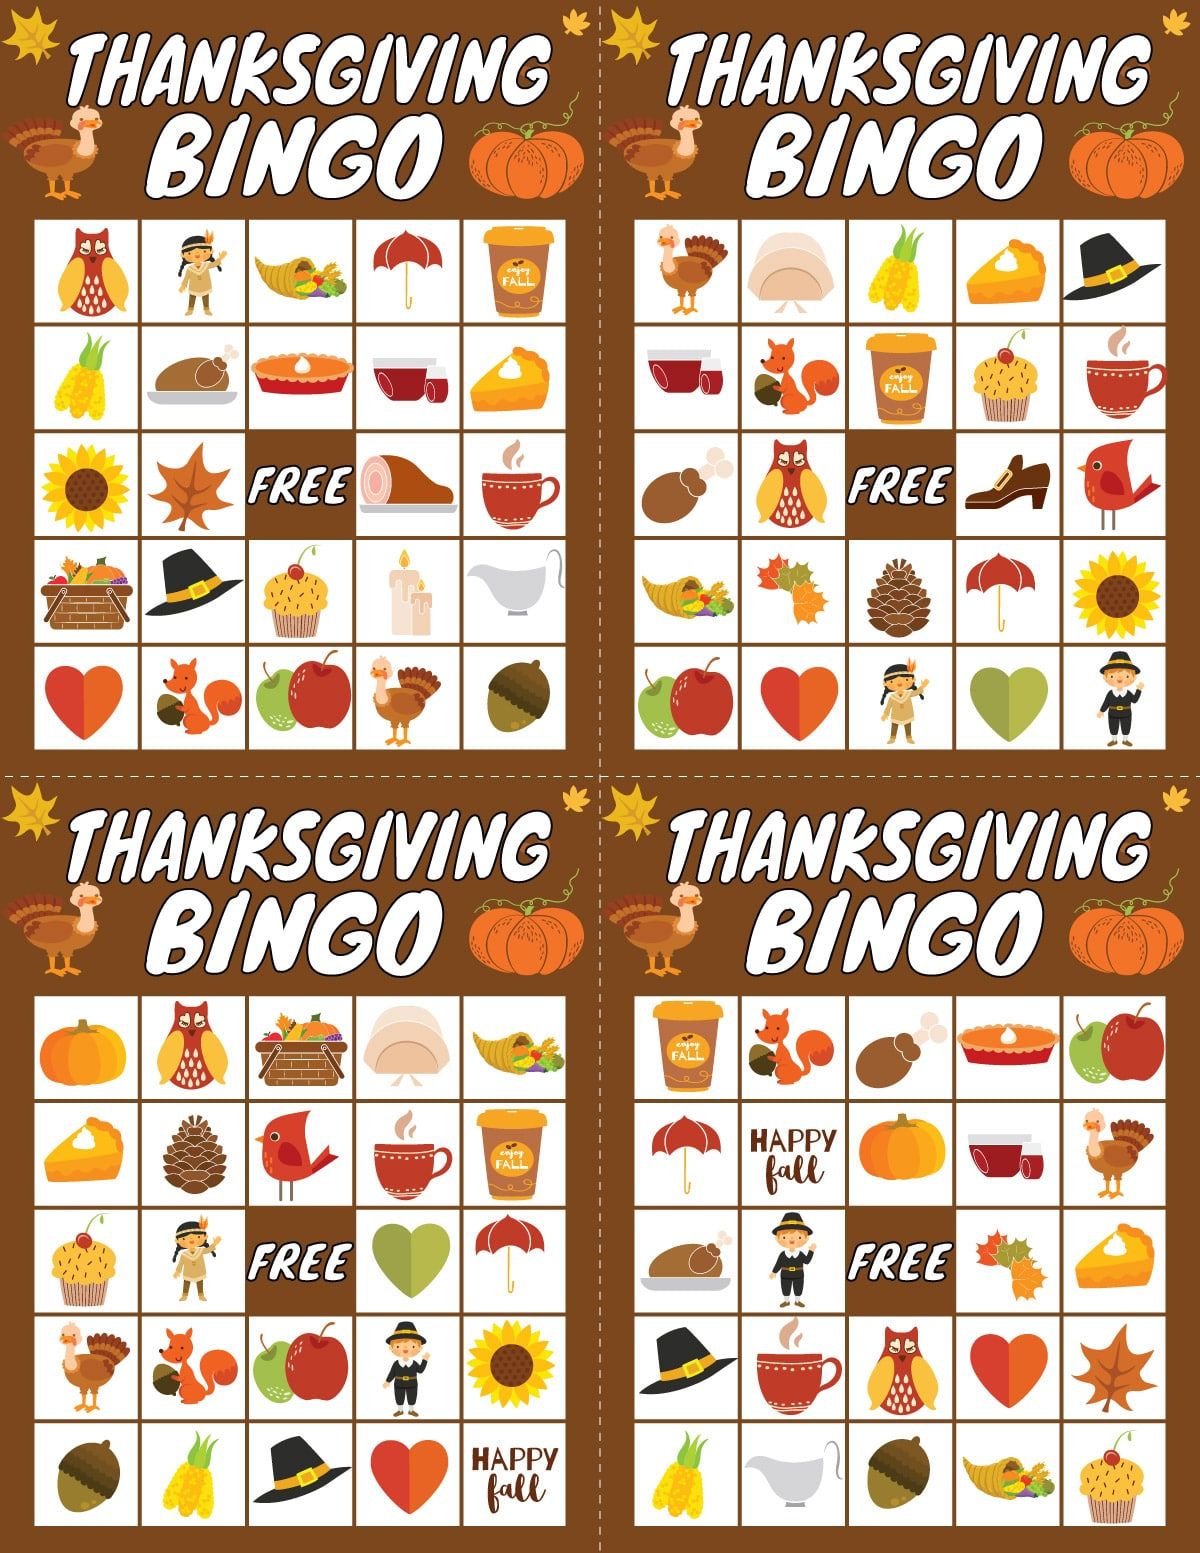 Neli tänupüha bingokaarti, millel on tänupüha pildid